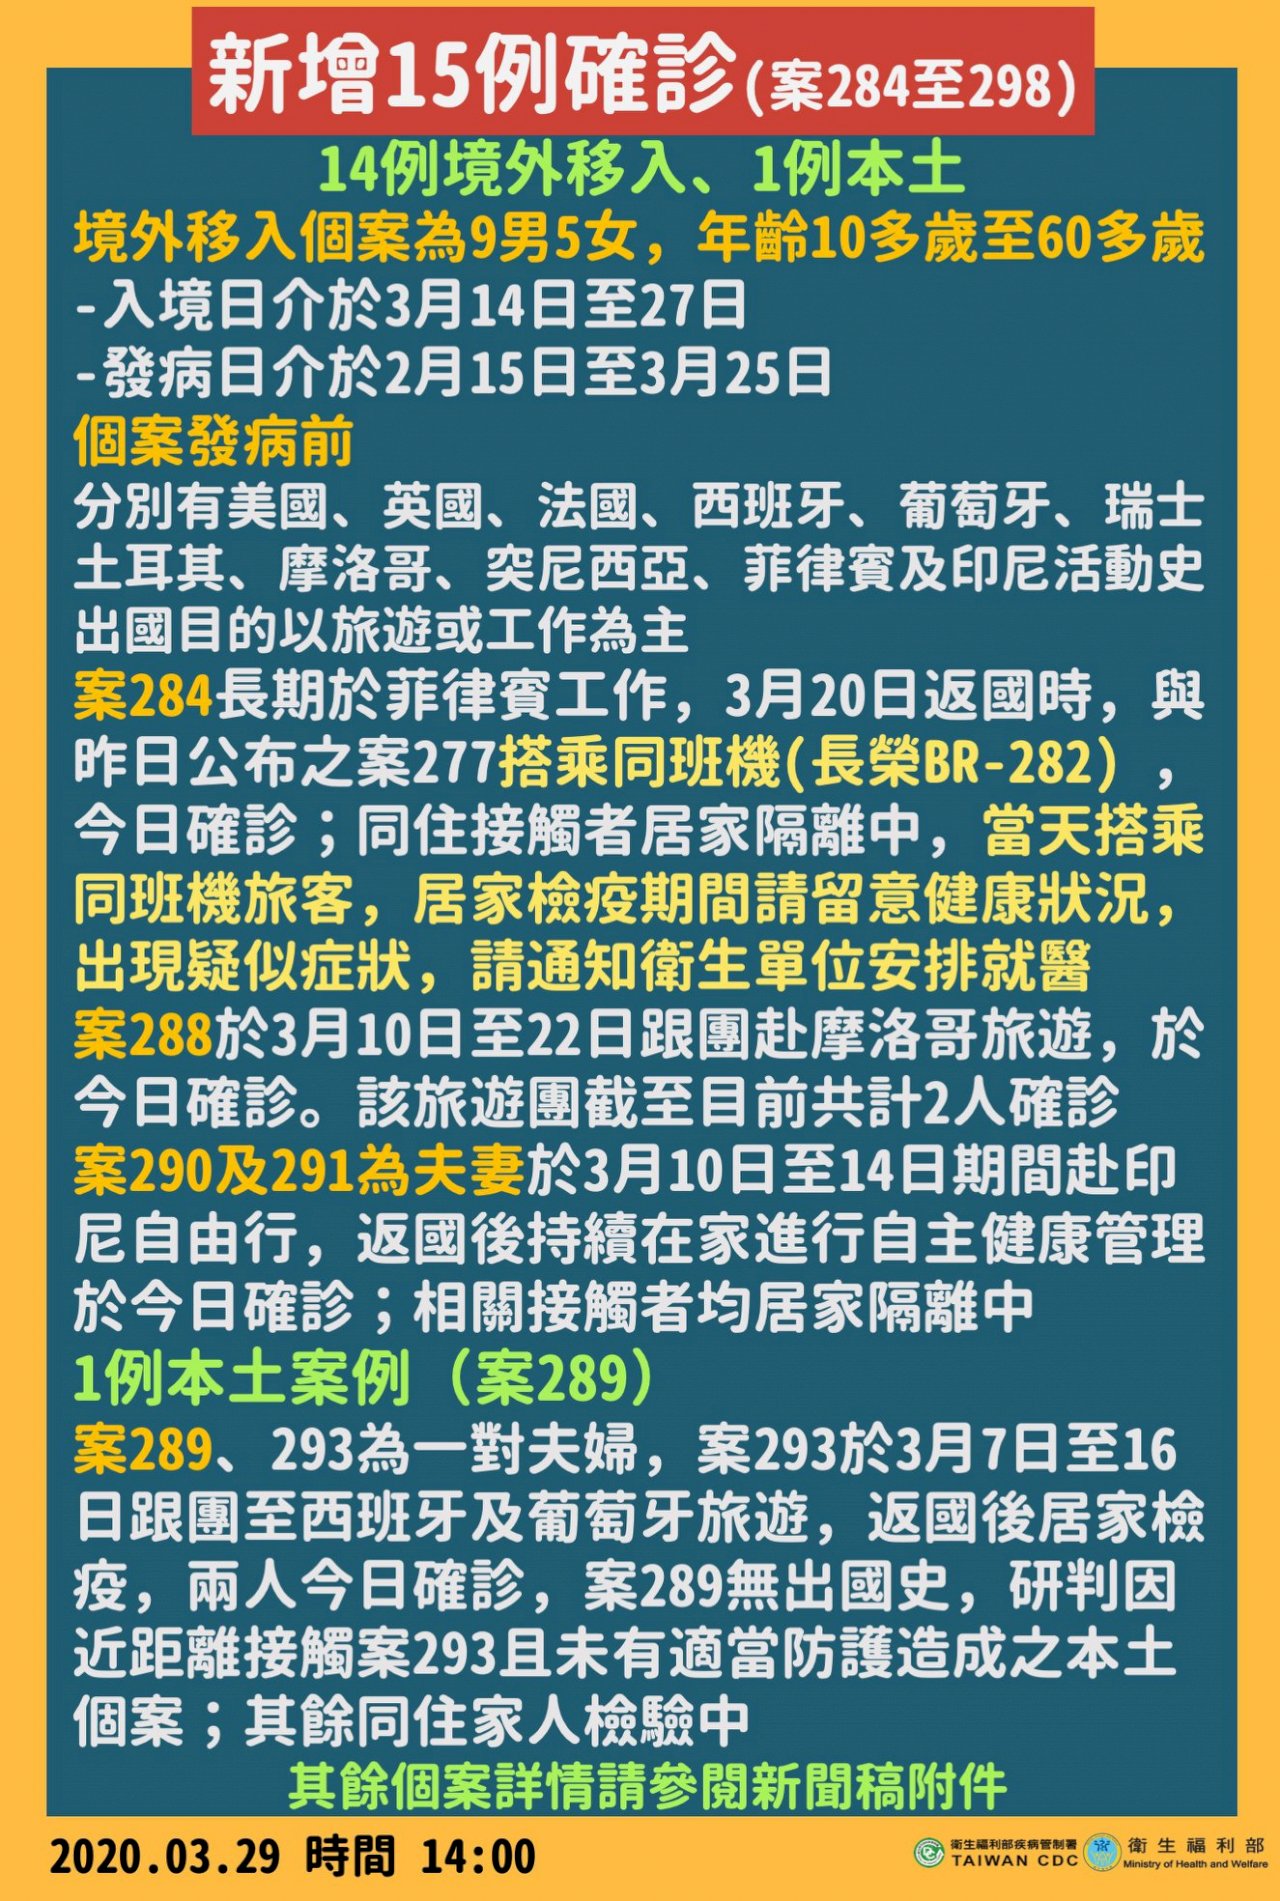 Đài Loan lại tăng thêm 15 ca ghi nhận nhiễm Covid-19, nâng tổng số ca nhiễm của Đài Loan lên 298 ca.